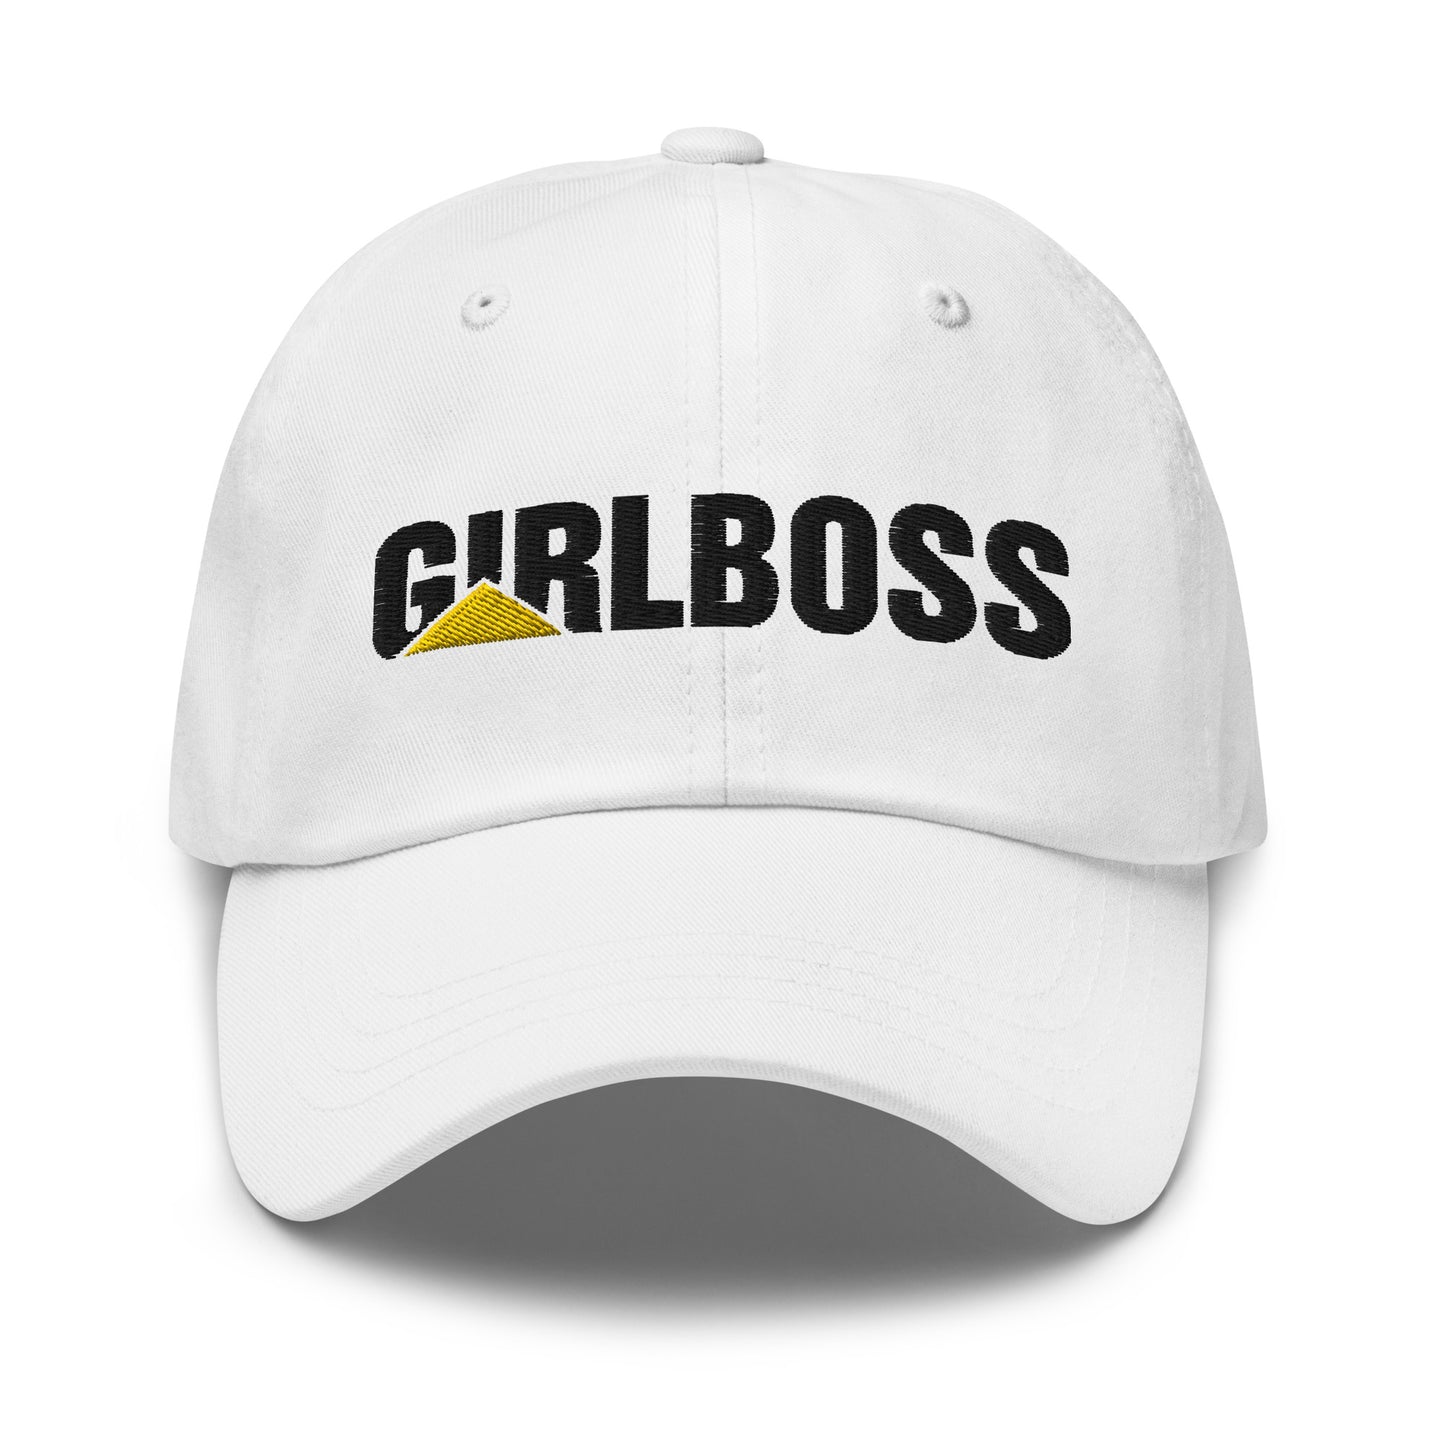 Girlboss (Caterpillar) hat